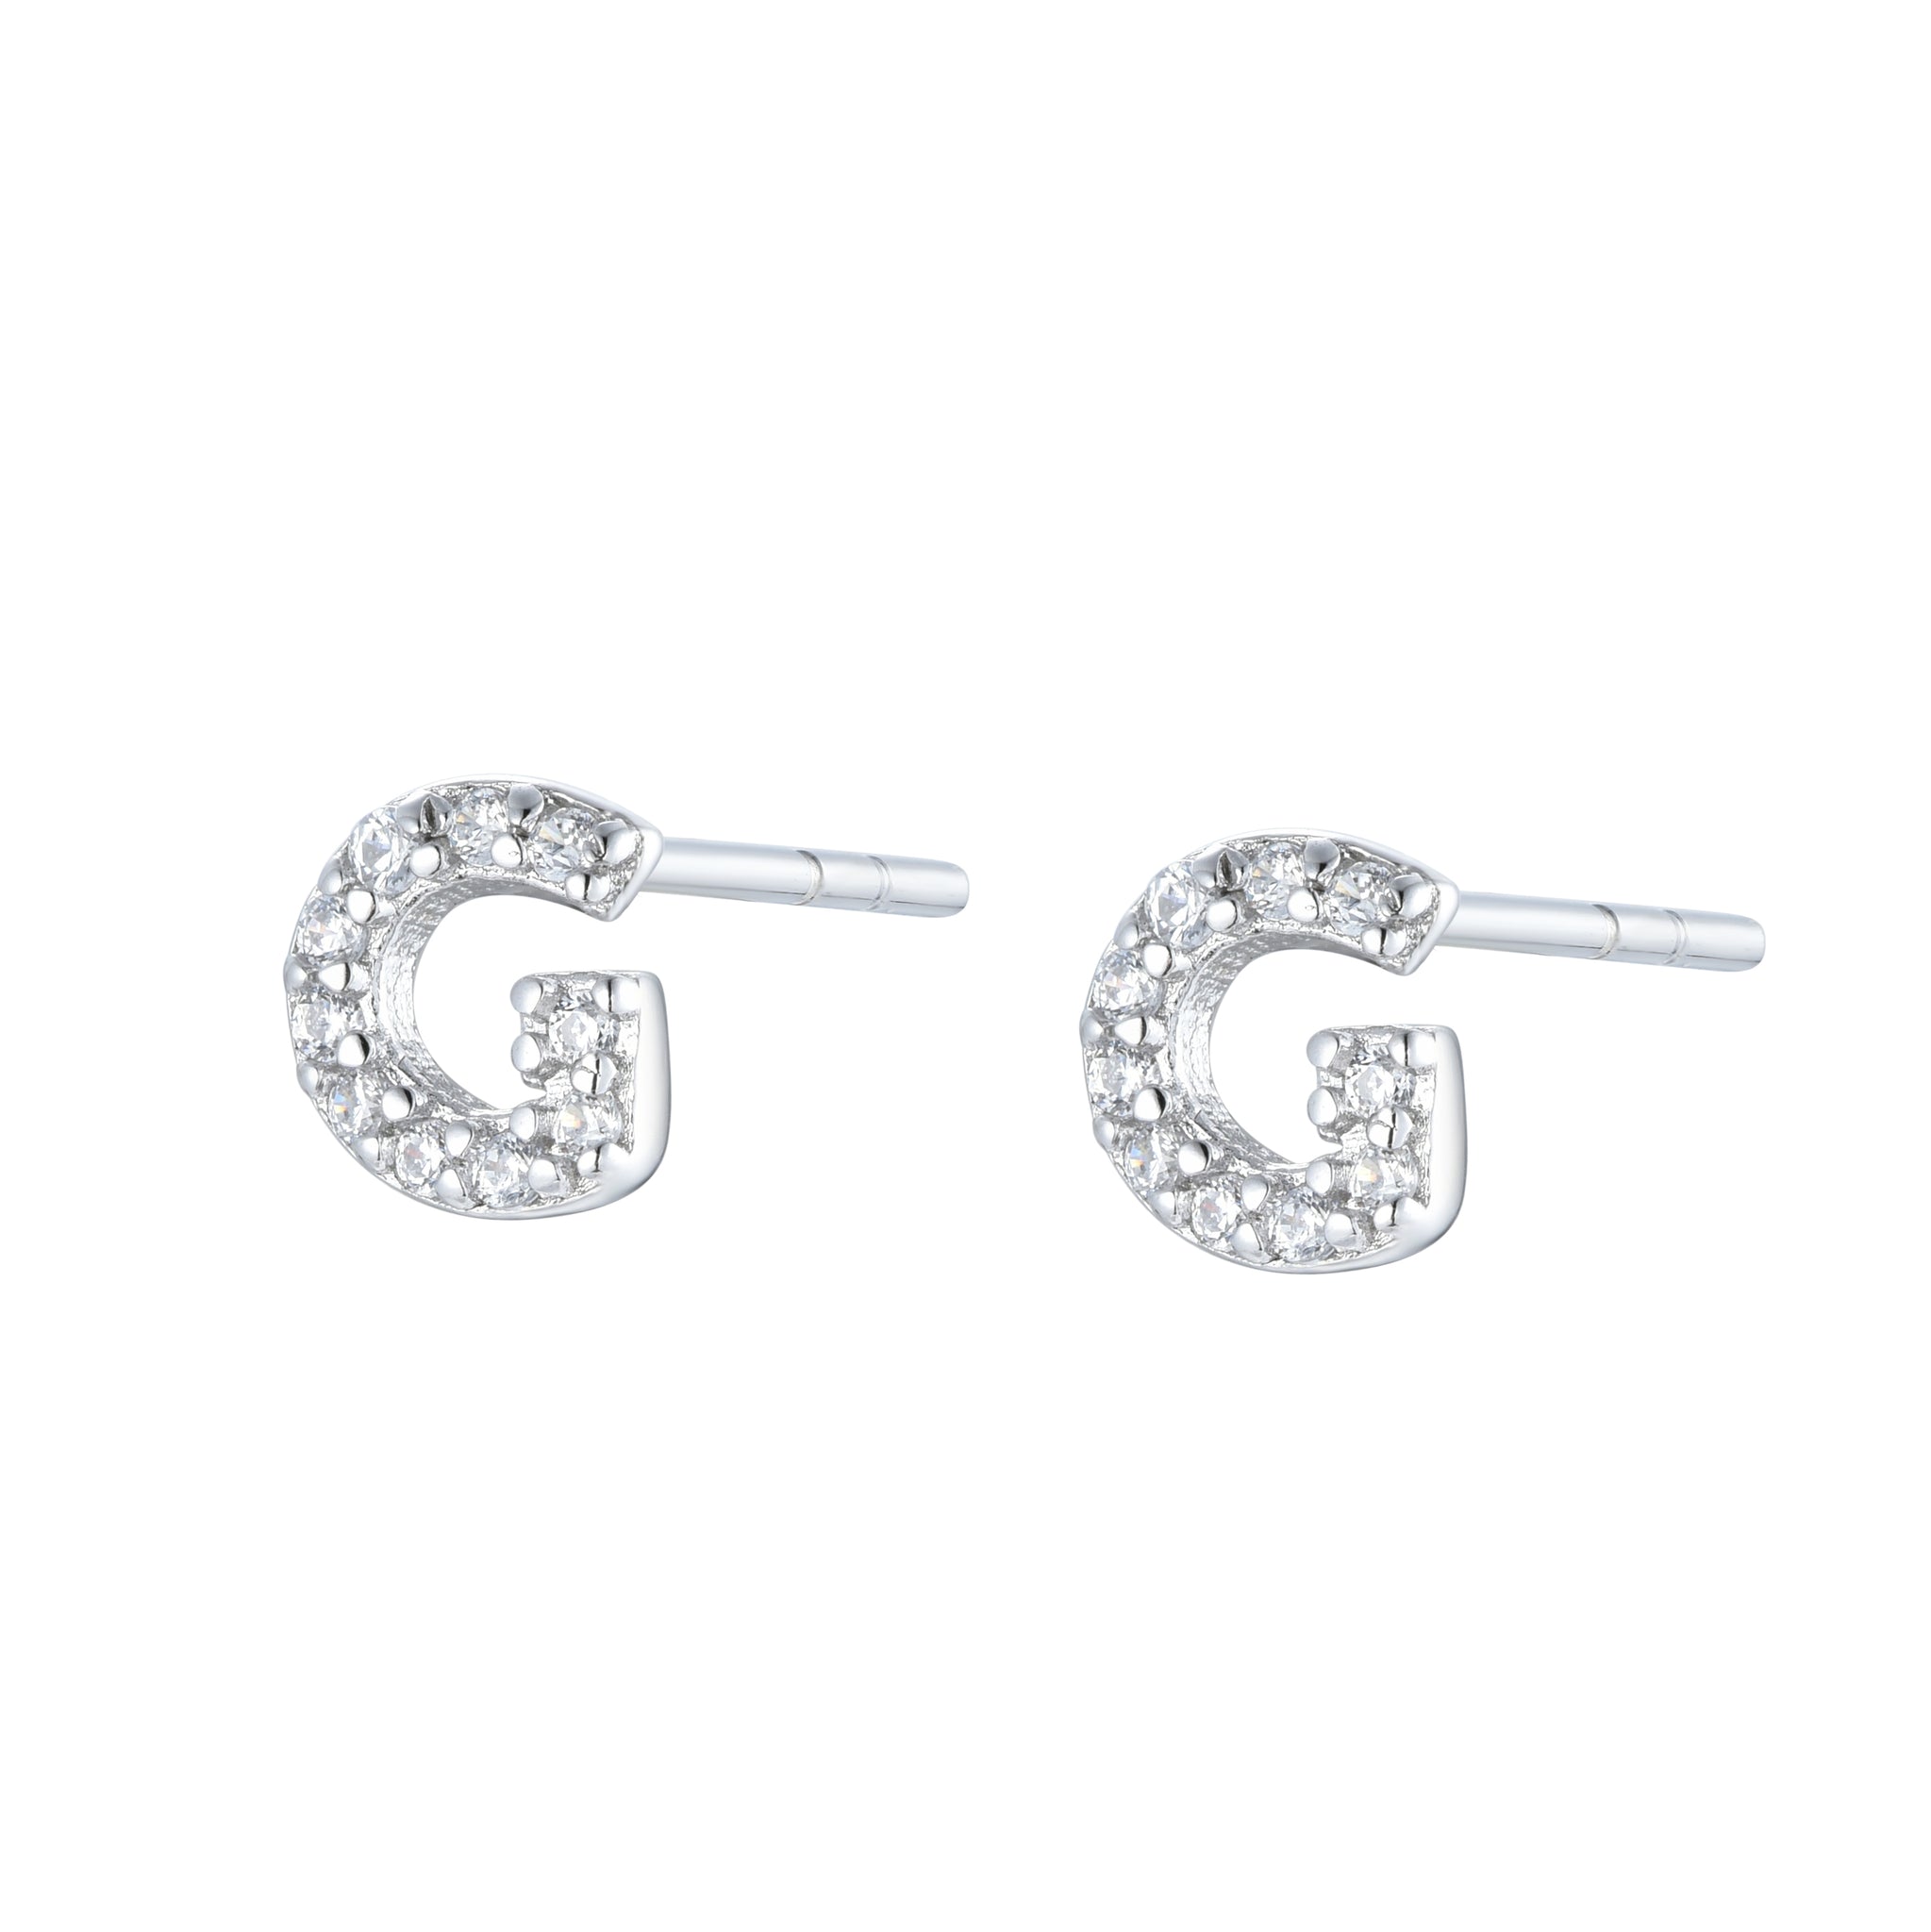 EG-26/S - Initial Stud Earrings (sold as a pair)